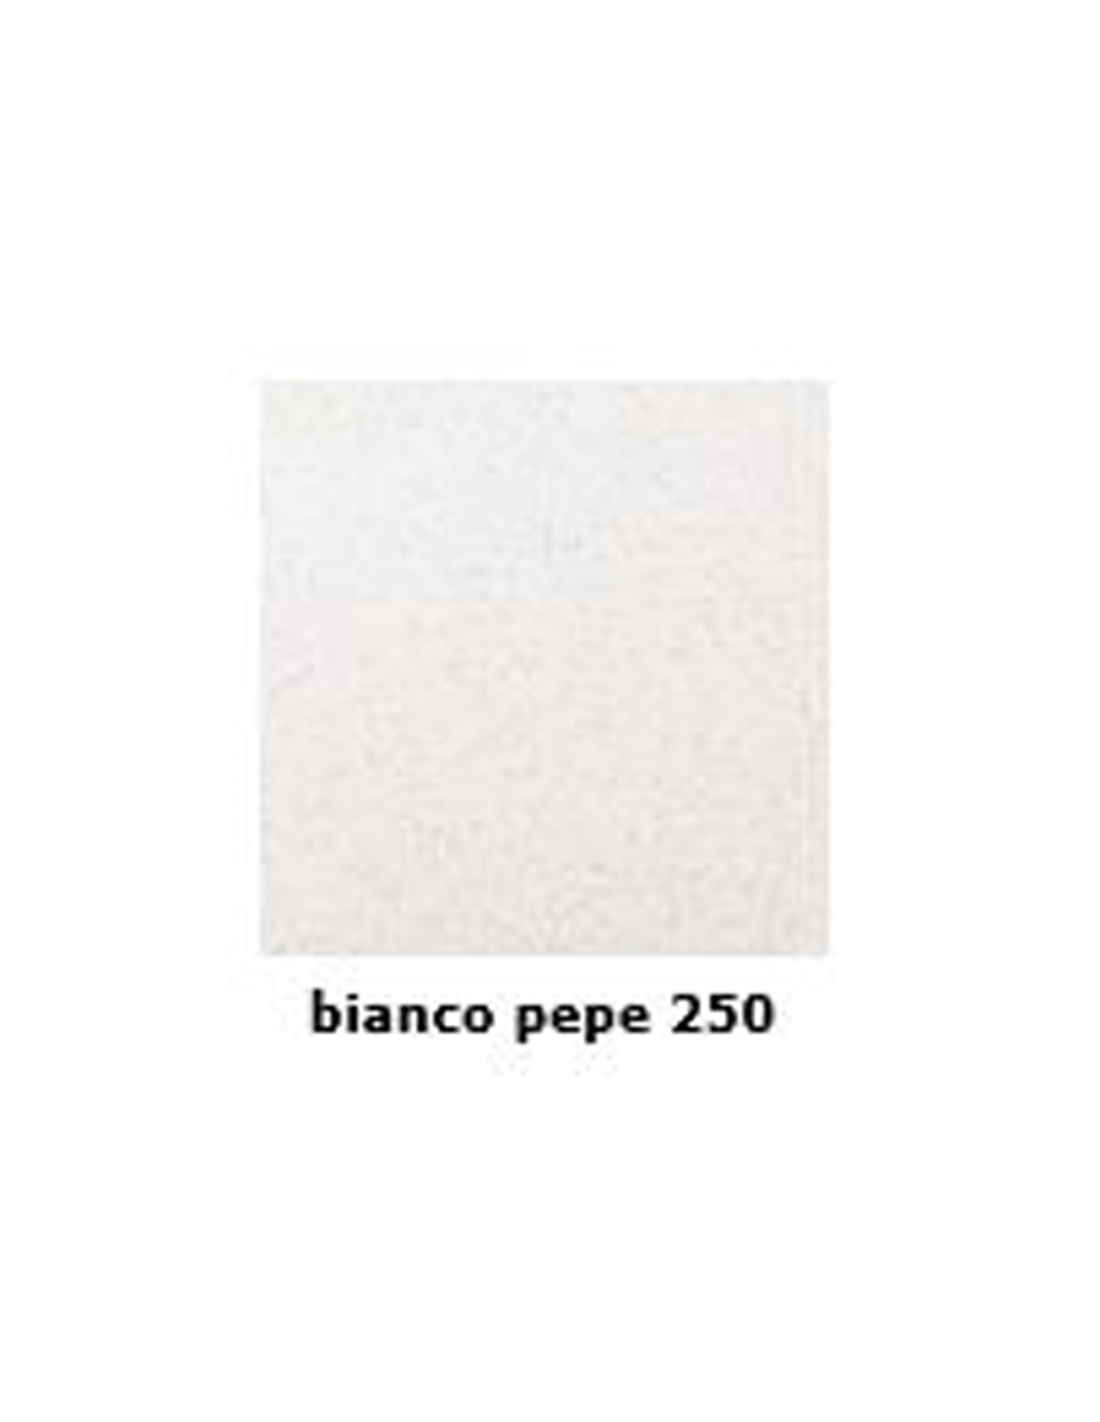 Color white pepper